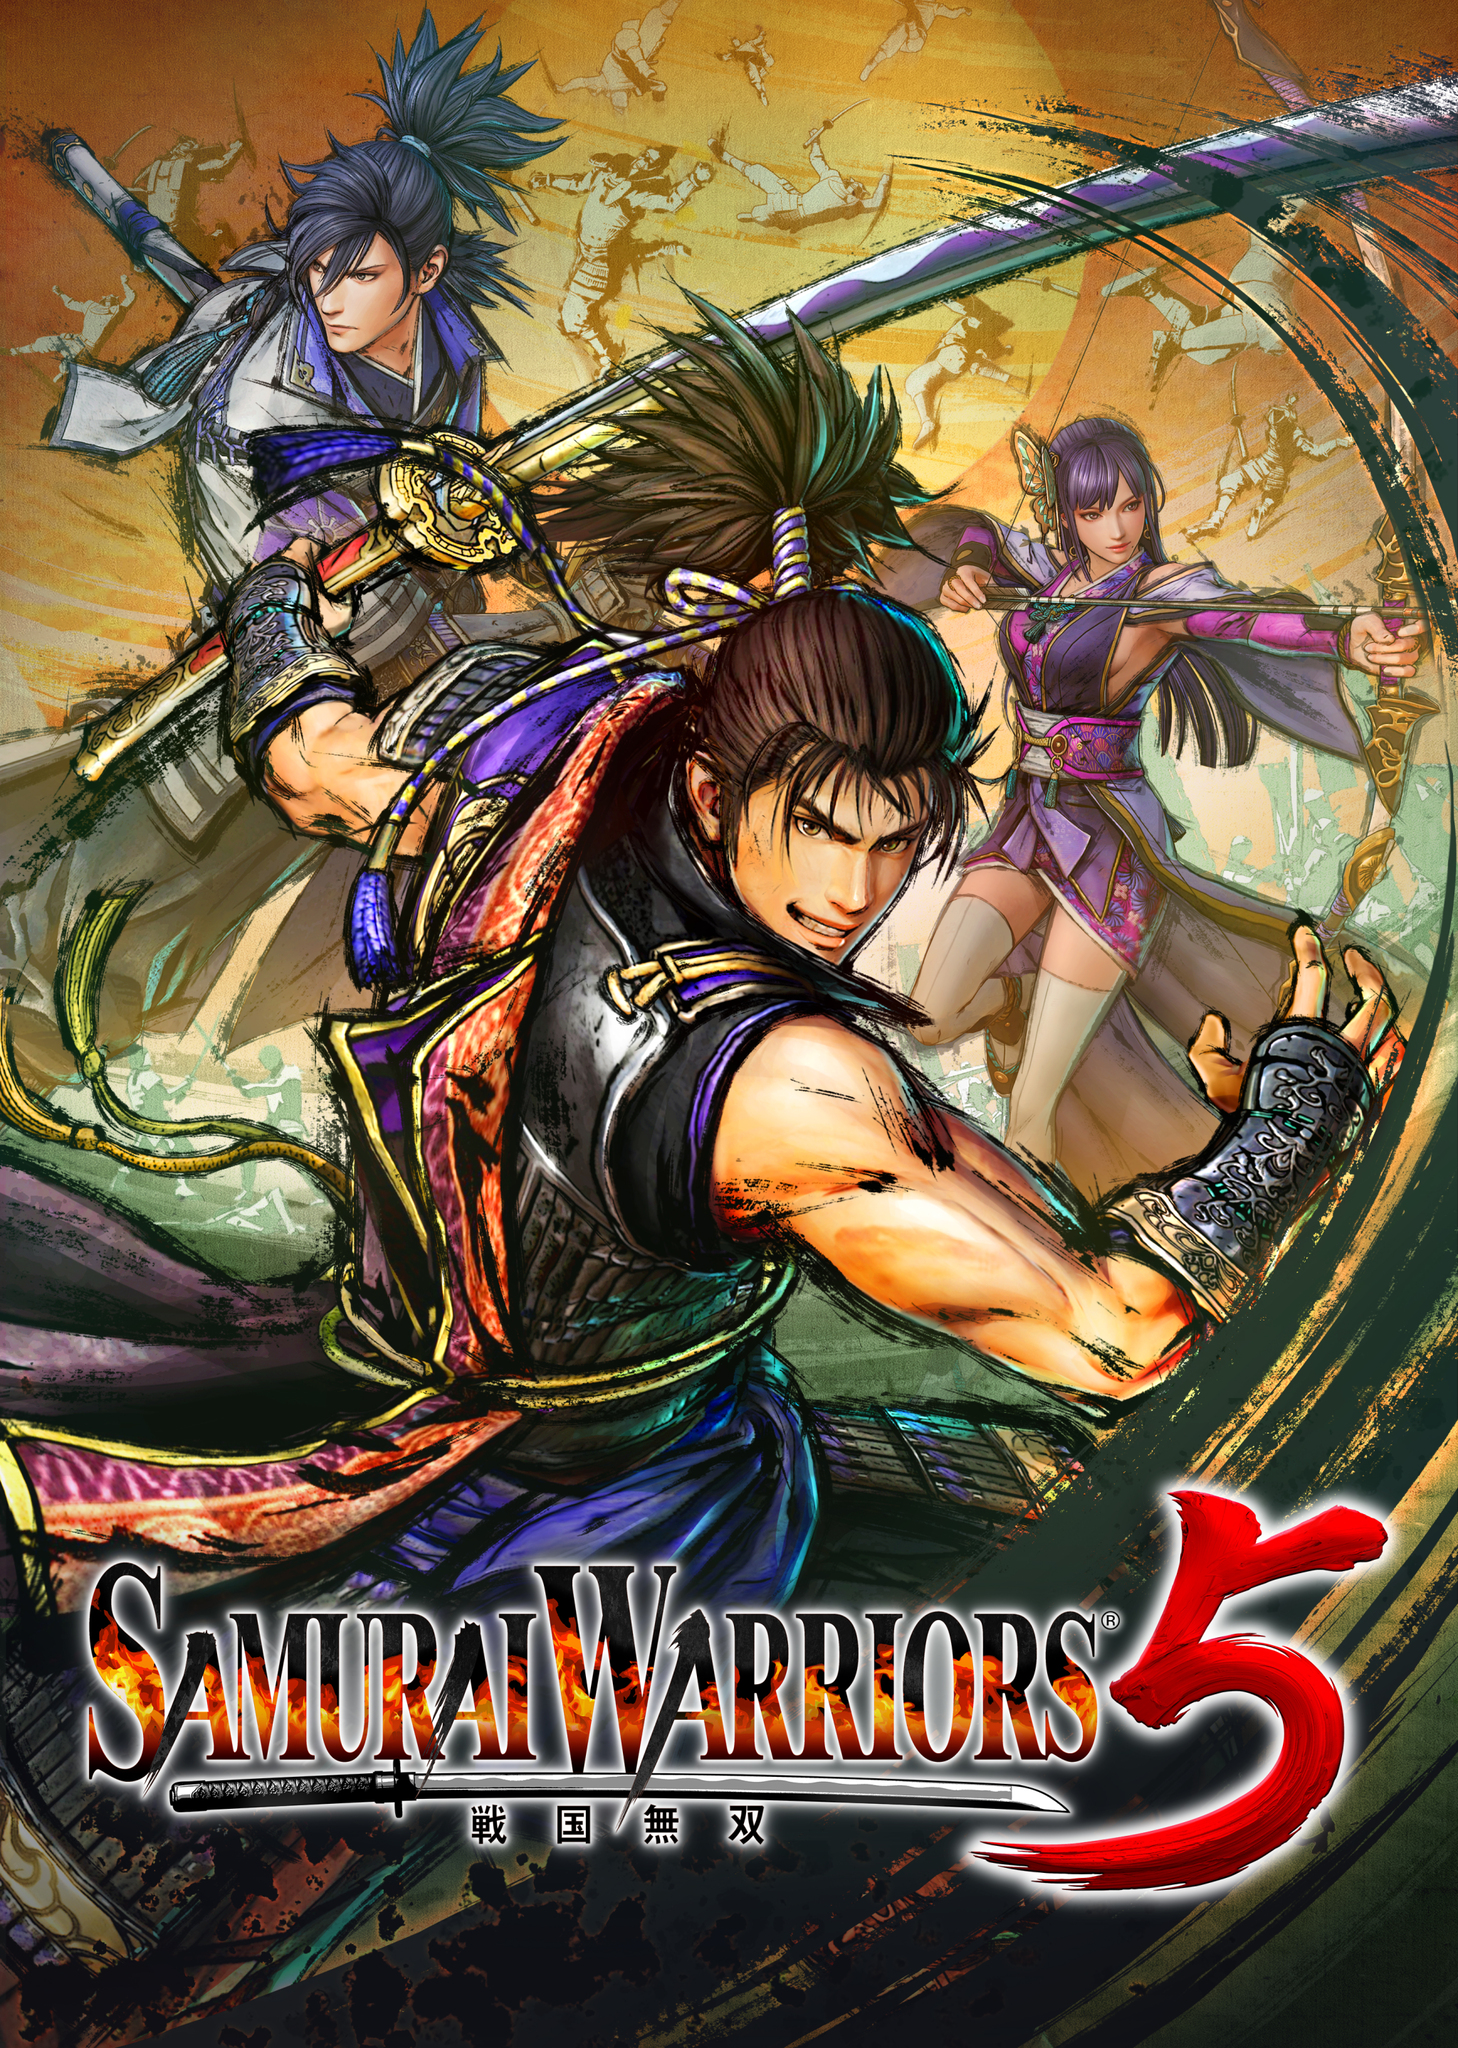 samuraiwarriors5splash.jpg